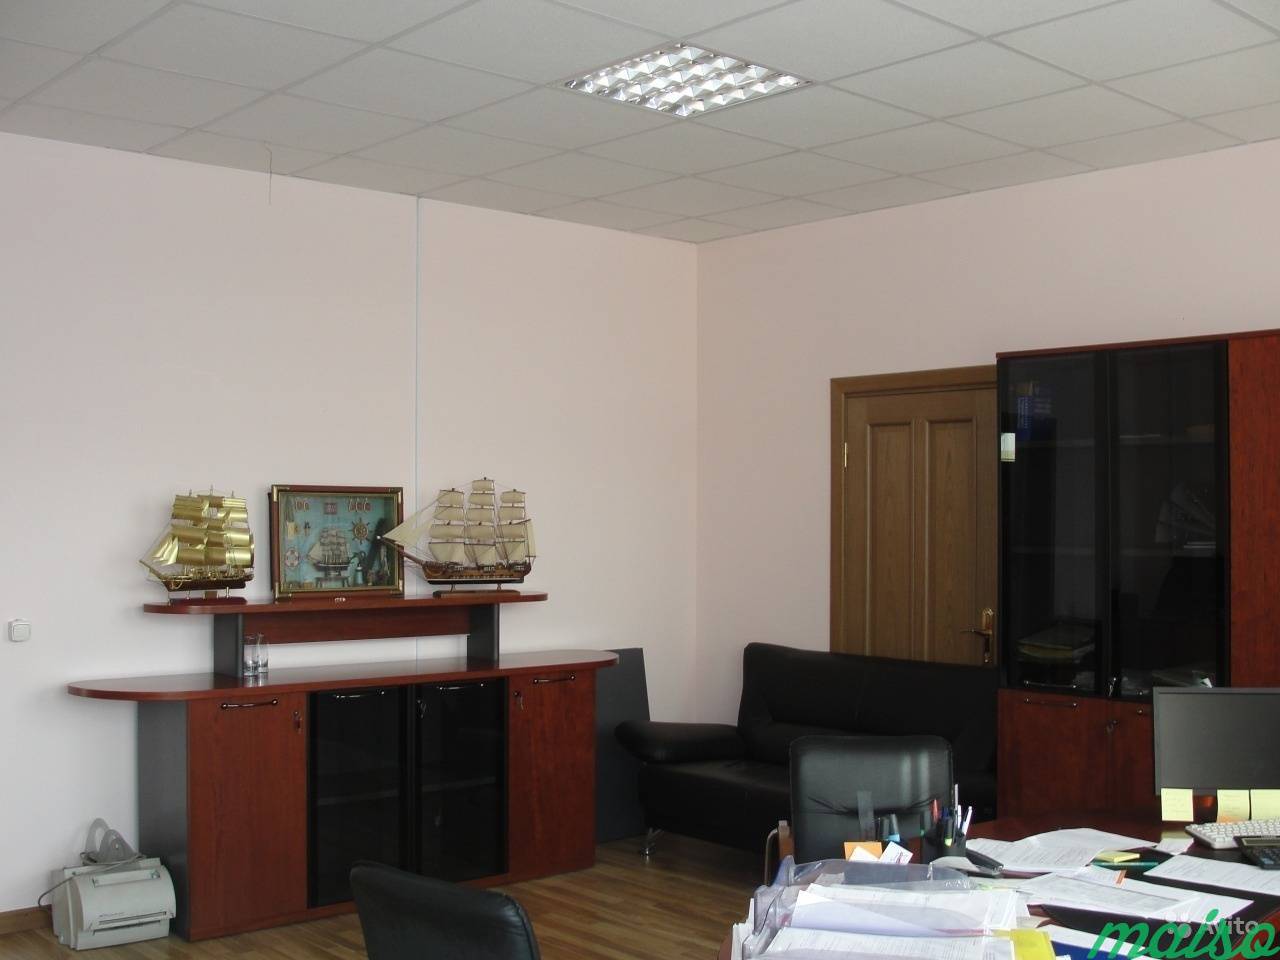 Офисное помещение в Славянке, от 12 м² до 500 м² в Санкт-Петербурге. Фото 5